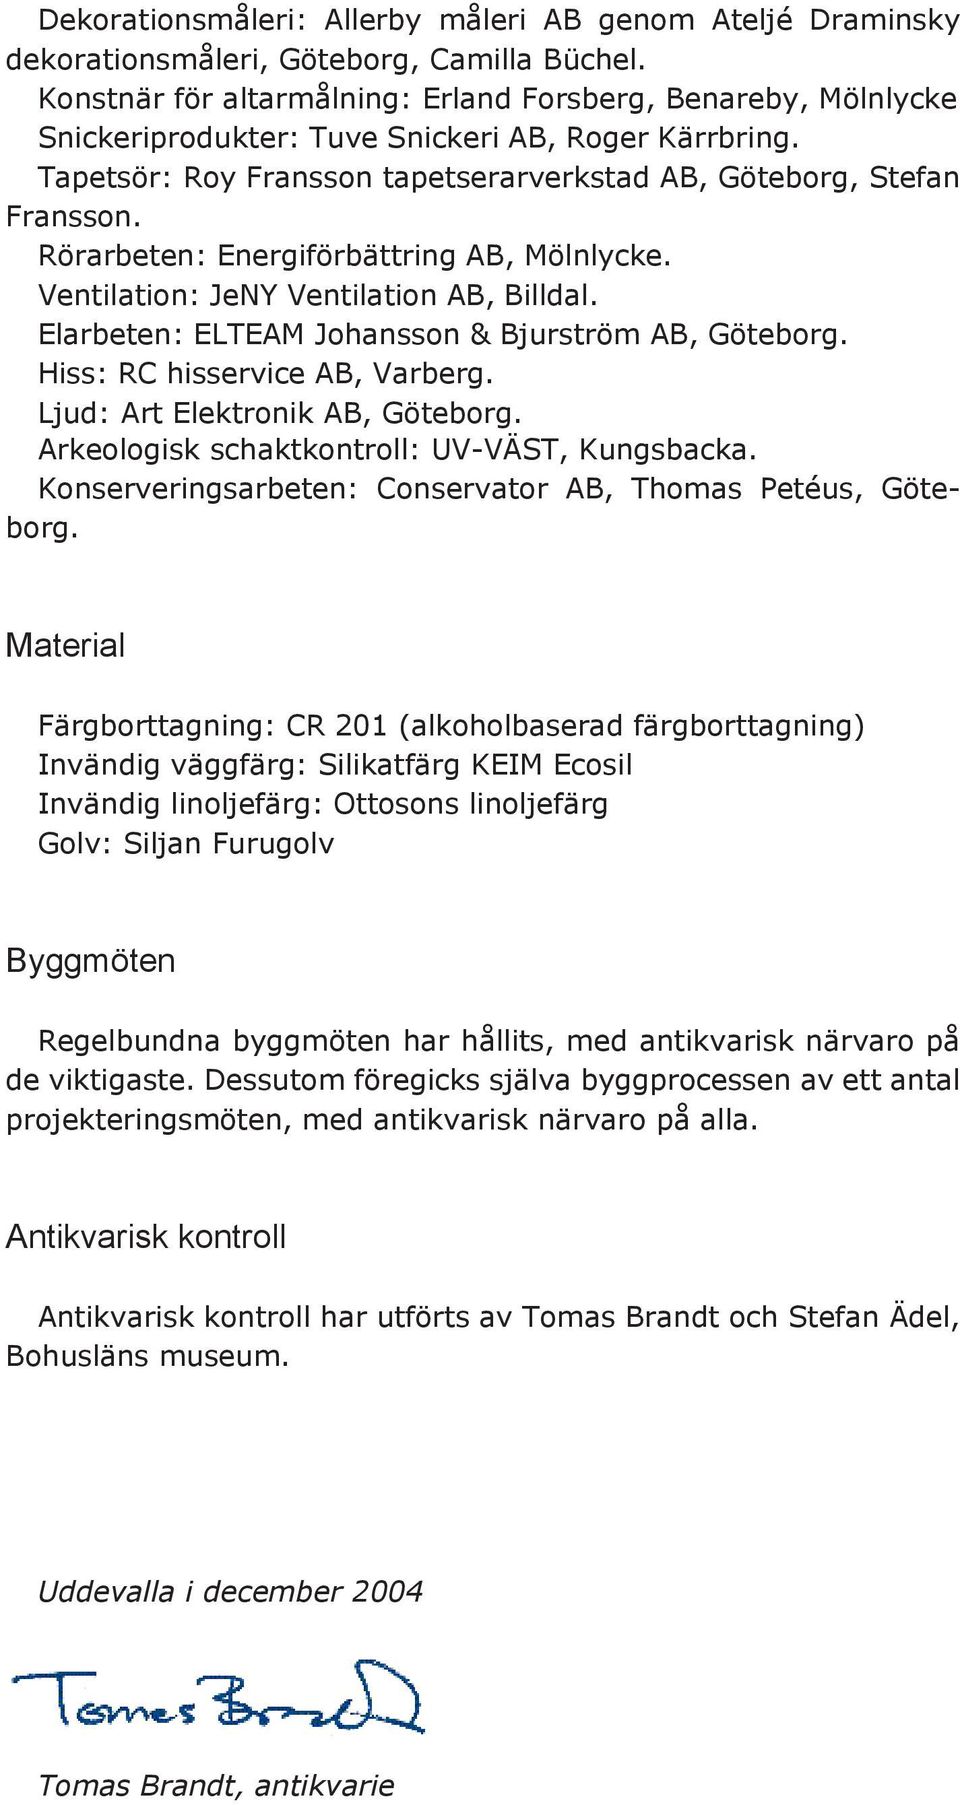 Rörarbeten: Energiförbättring AB, Mölnlycke. Ventilation: JeNY Ventilation AB, Billdal. Elarbeten: ELTEAM Johansson & Bjurström AB, Göteborg. Hiss: RC hisservice AB, Varberg.